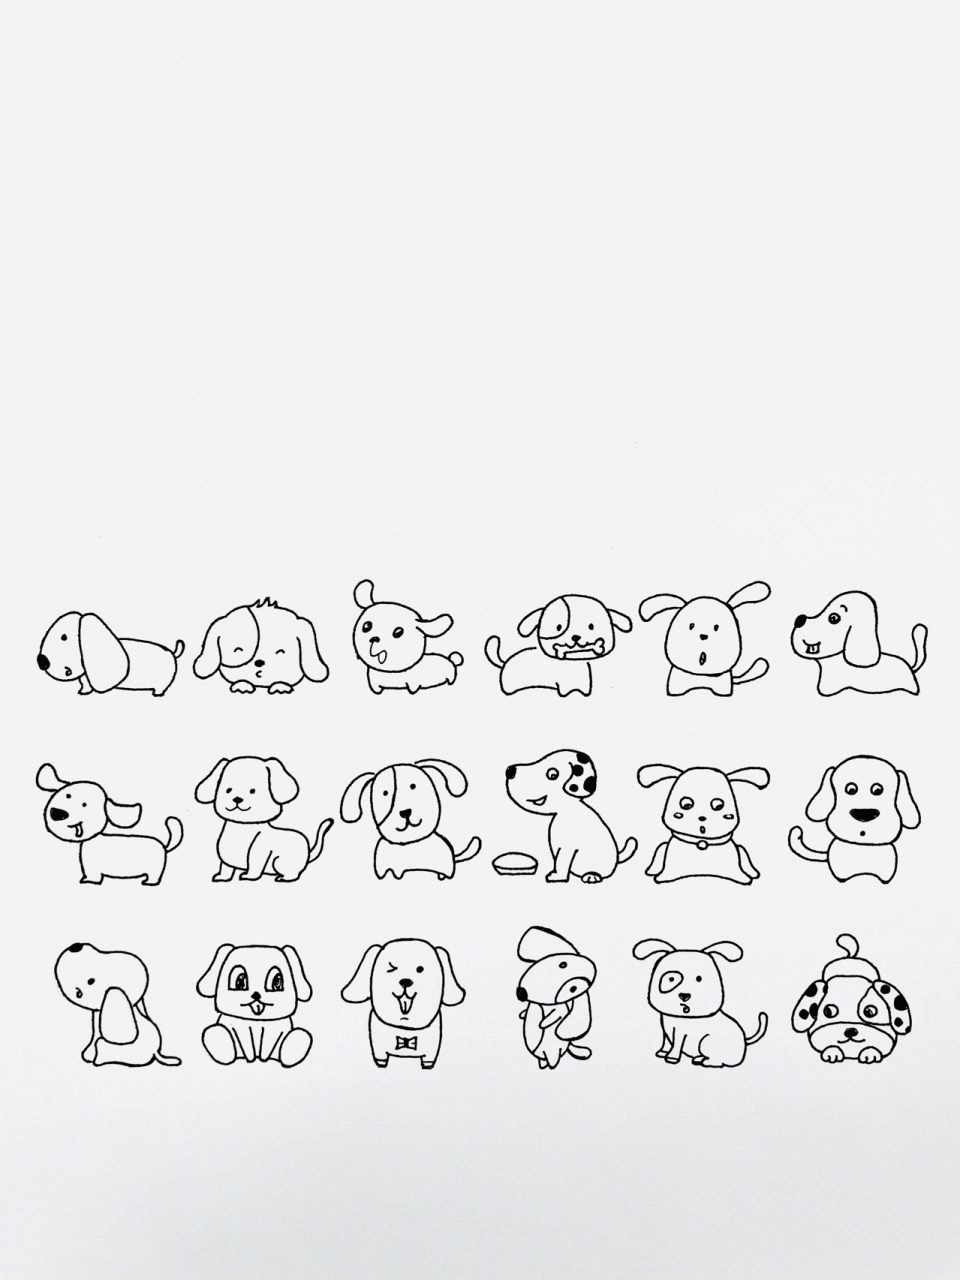 【简笔画】狗98 分享一组可爱的小狗简笔画 简笔画其实不难,只要花